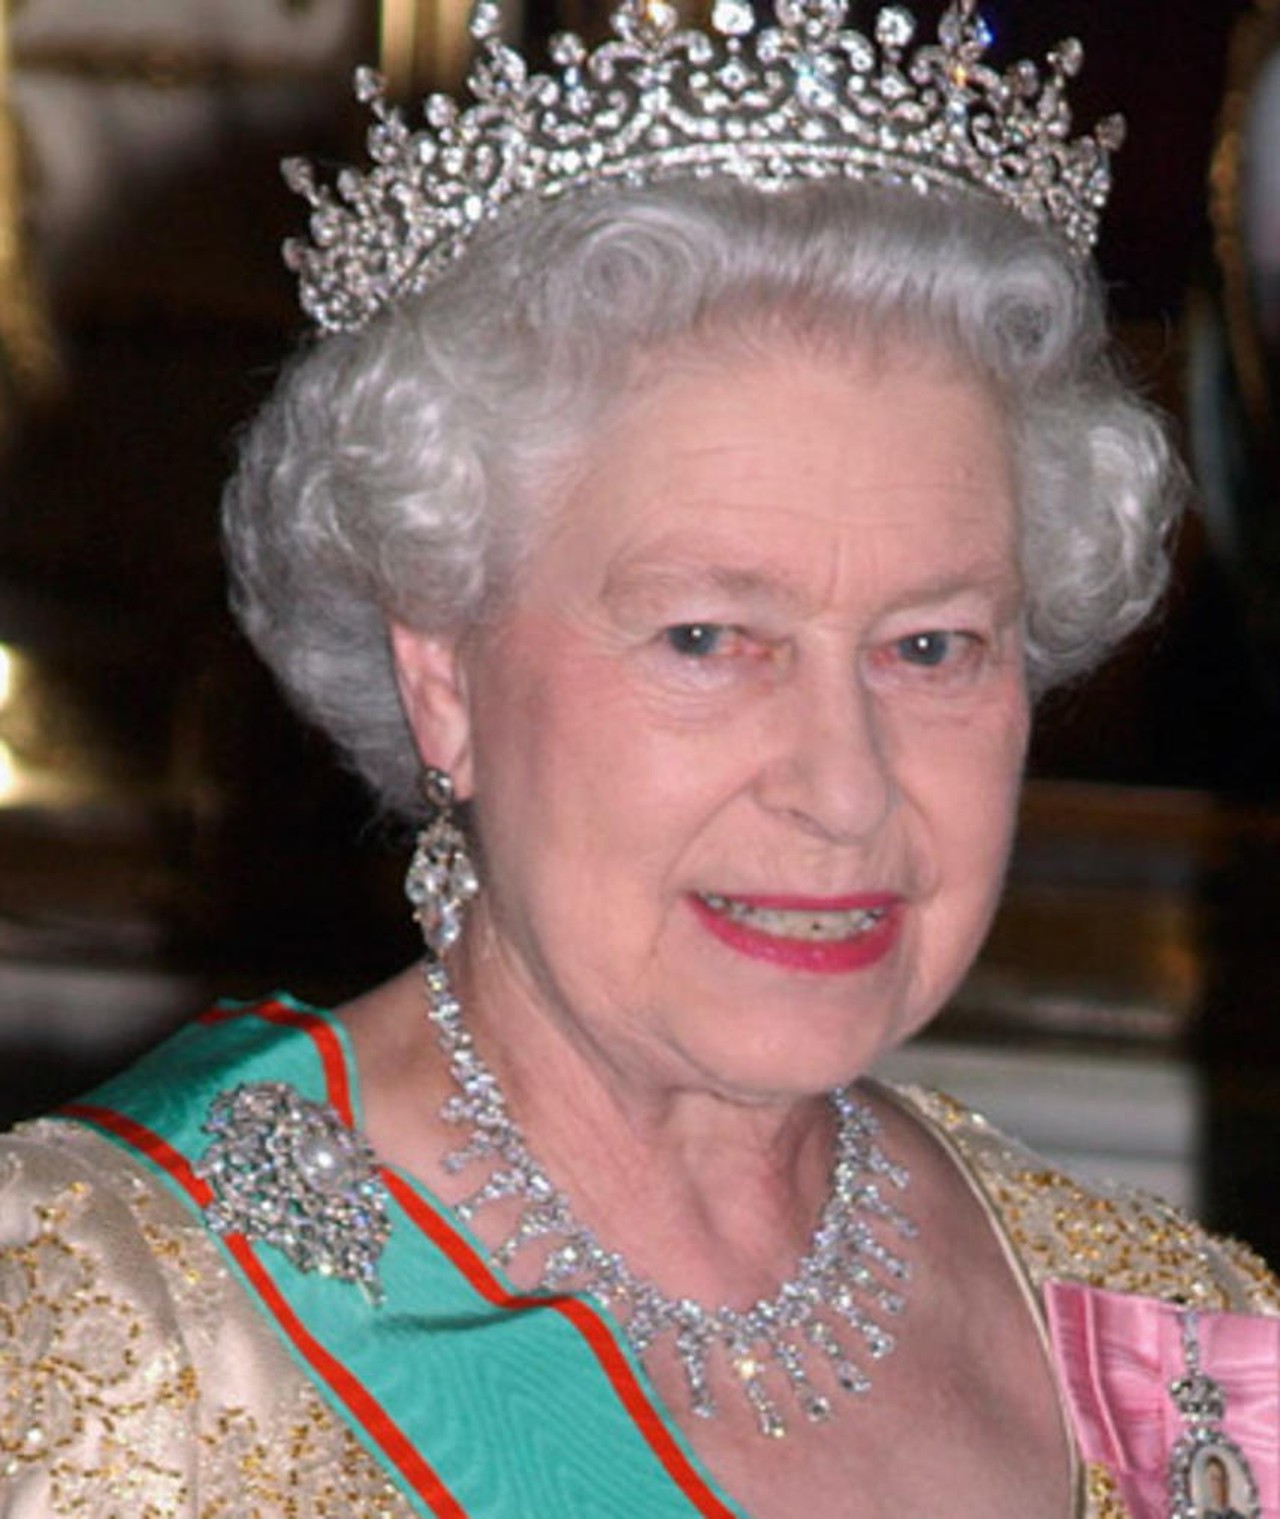 Queen of great britain